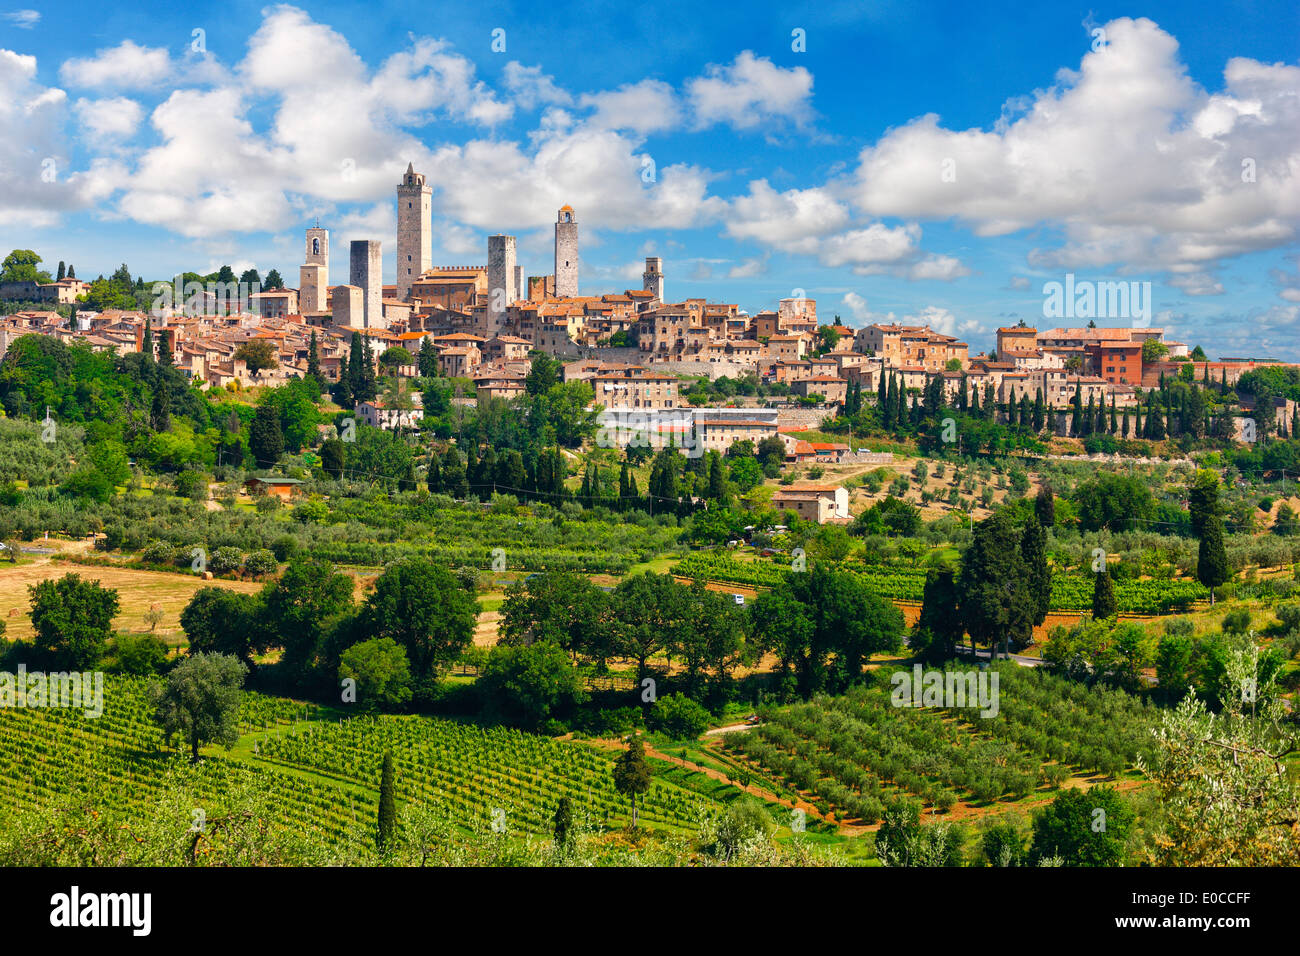 Die mittelalterliche Stadt San Gimignano in der Toskana, Italien. Einen Panoramablick auf die hügelige Stadt mit Türmen und schöne Wolken. Stockfoto